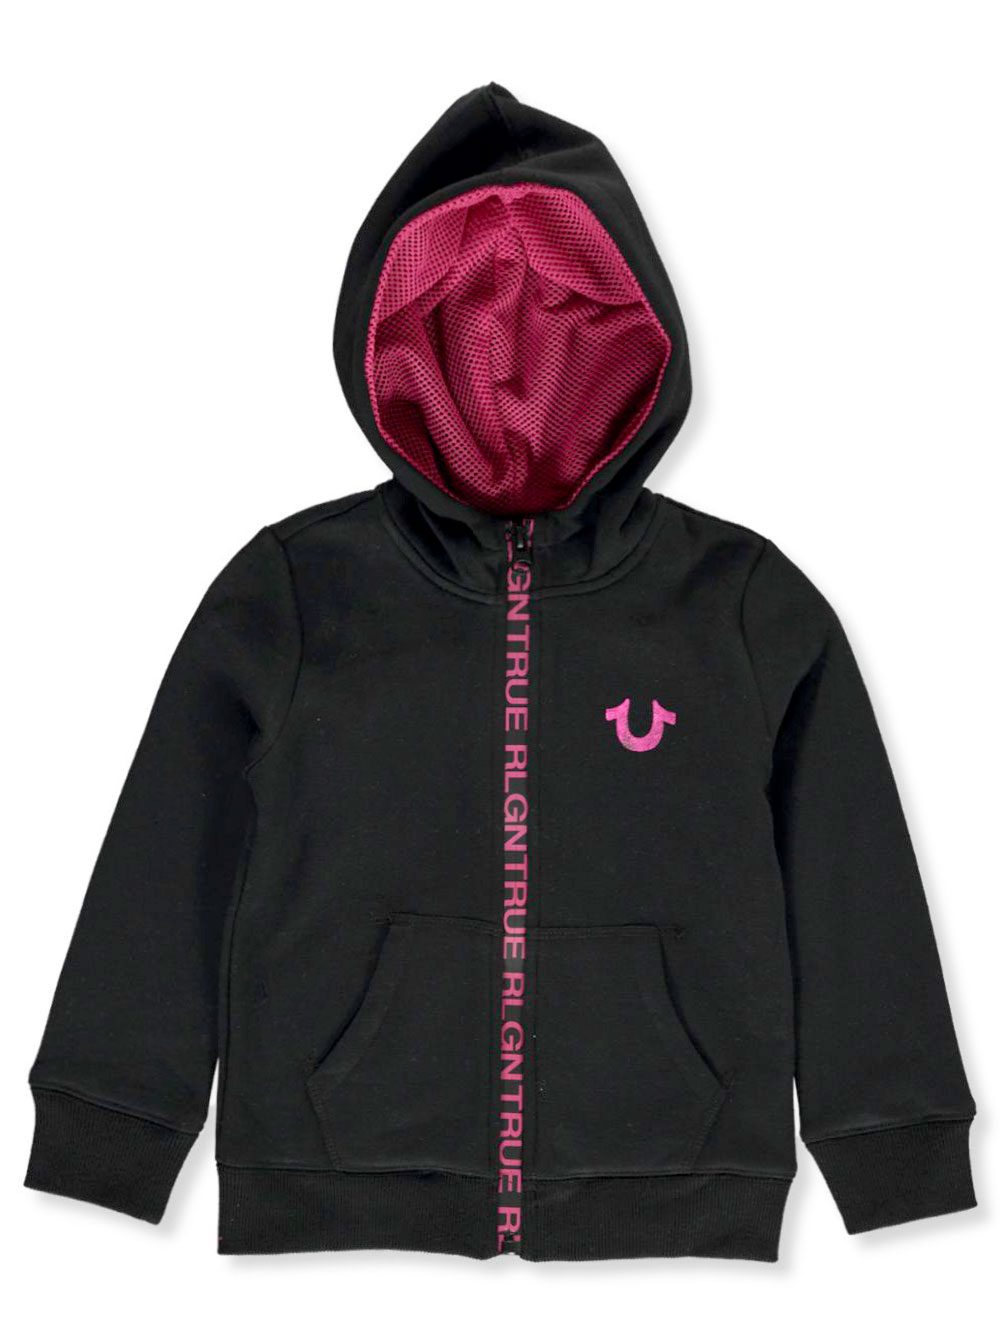 true religion hoodie girls